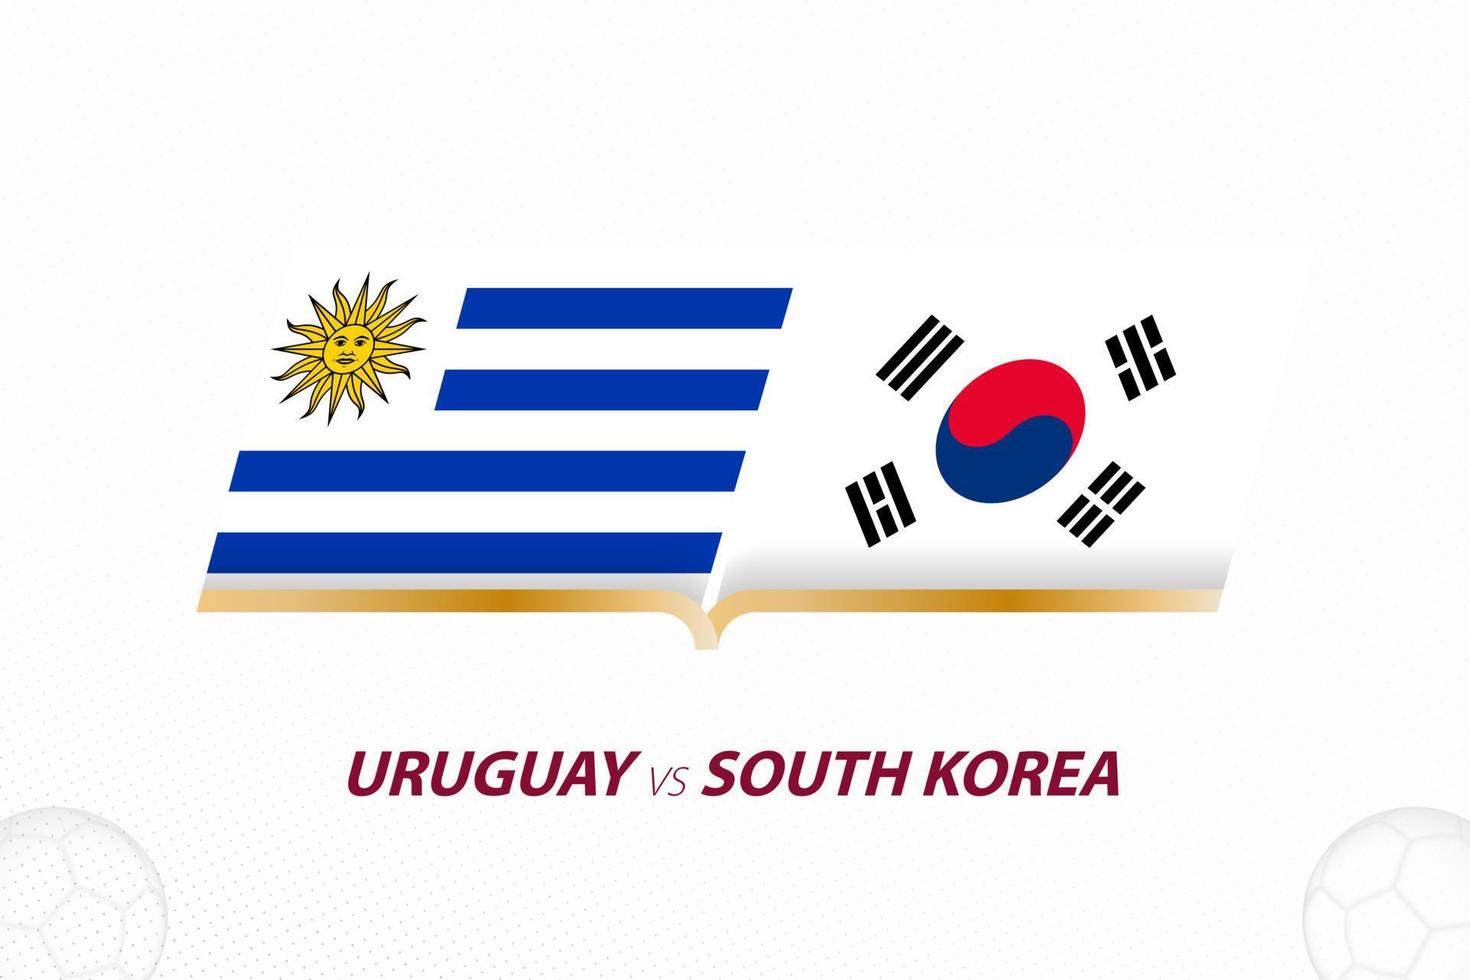 uruguai x coreia do sul na competição de futebol, grupo a. contra o ícone no fundo do futebol. vetor